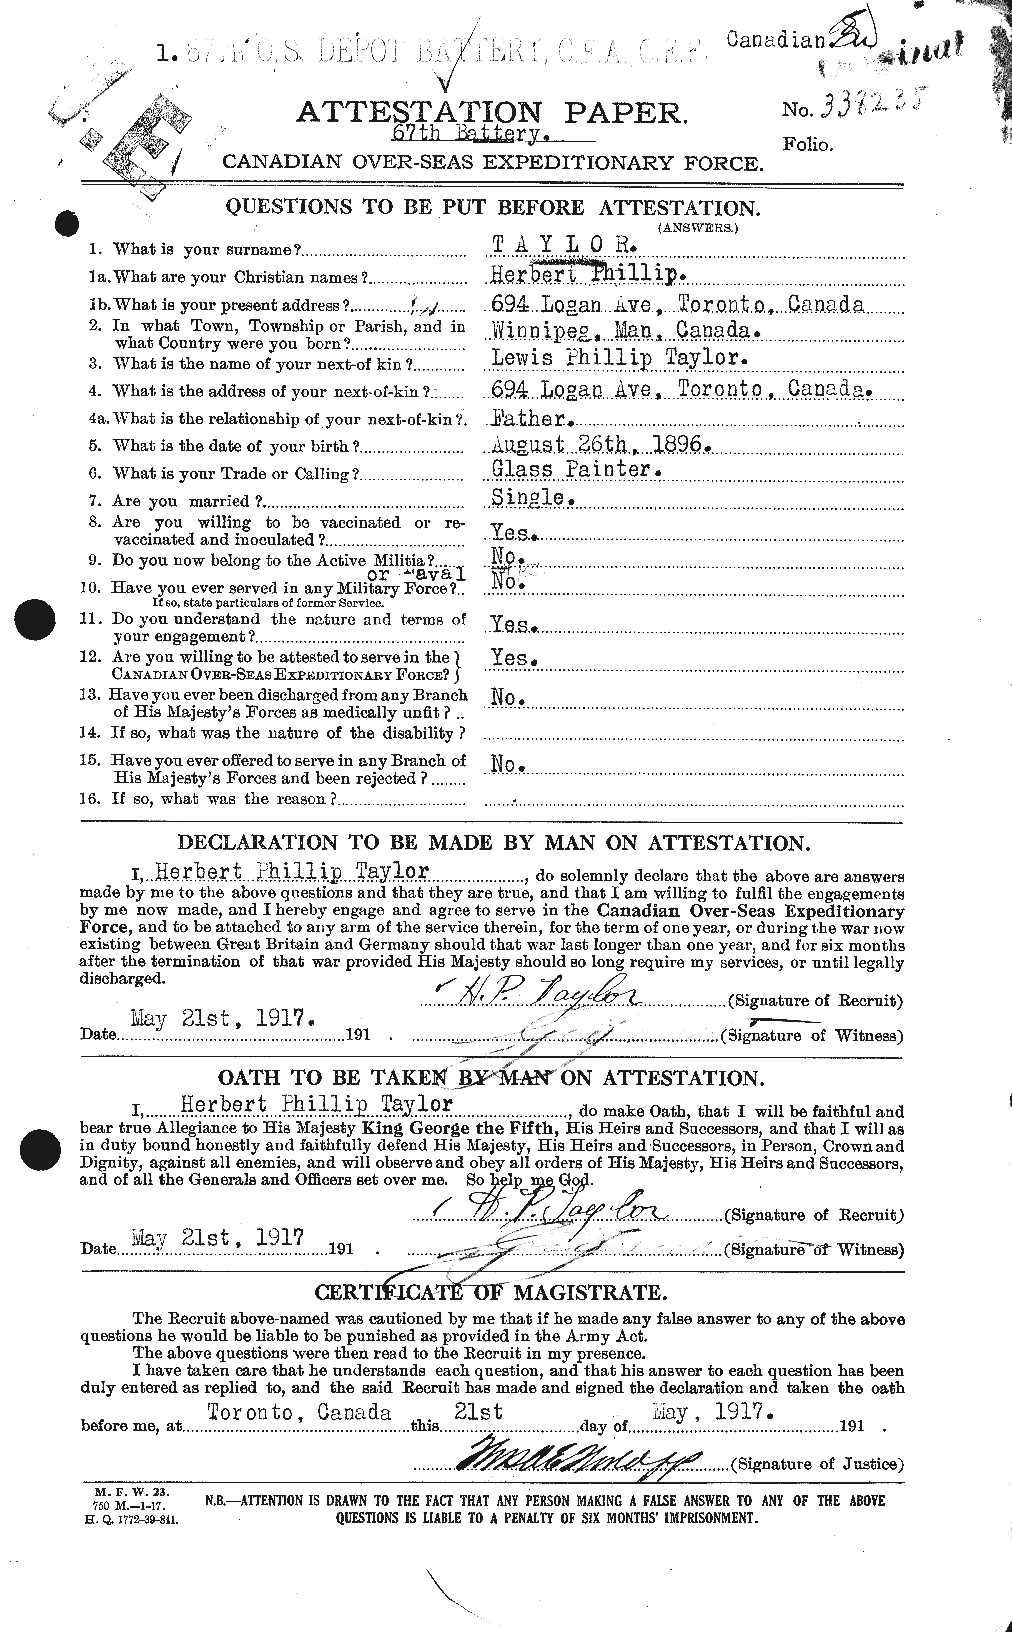 Dossiers du Personnel de la Première Guerre mondiale - CEC 626576a